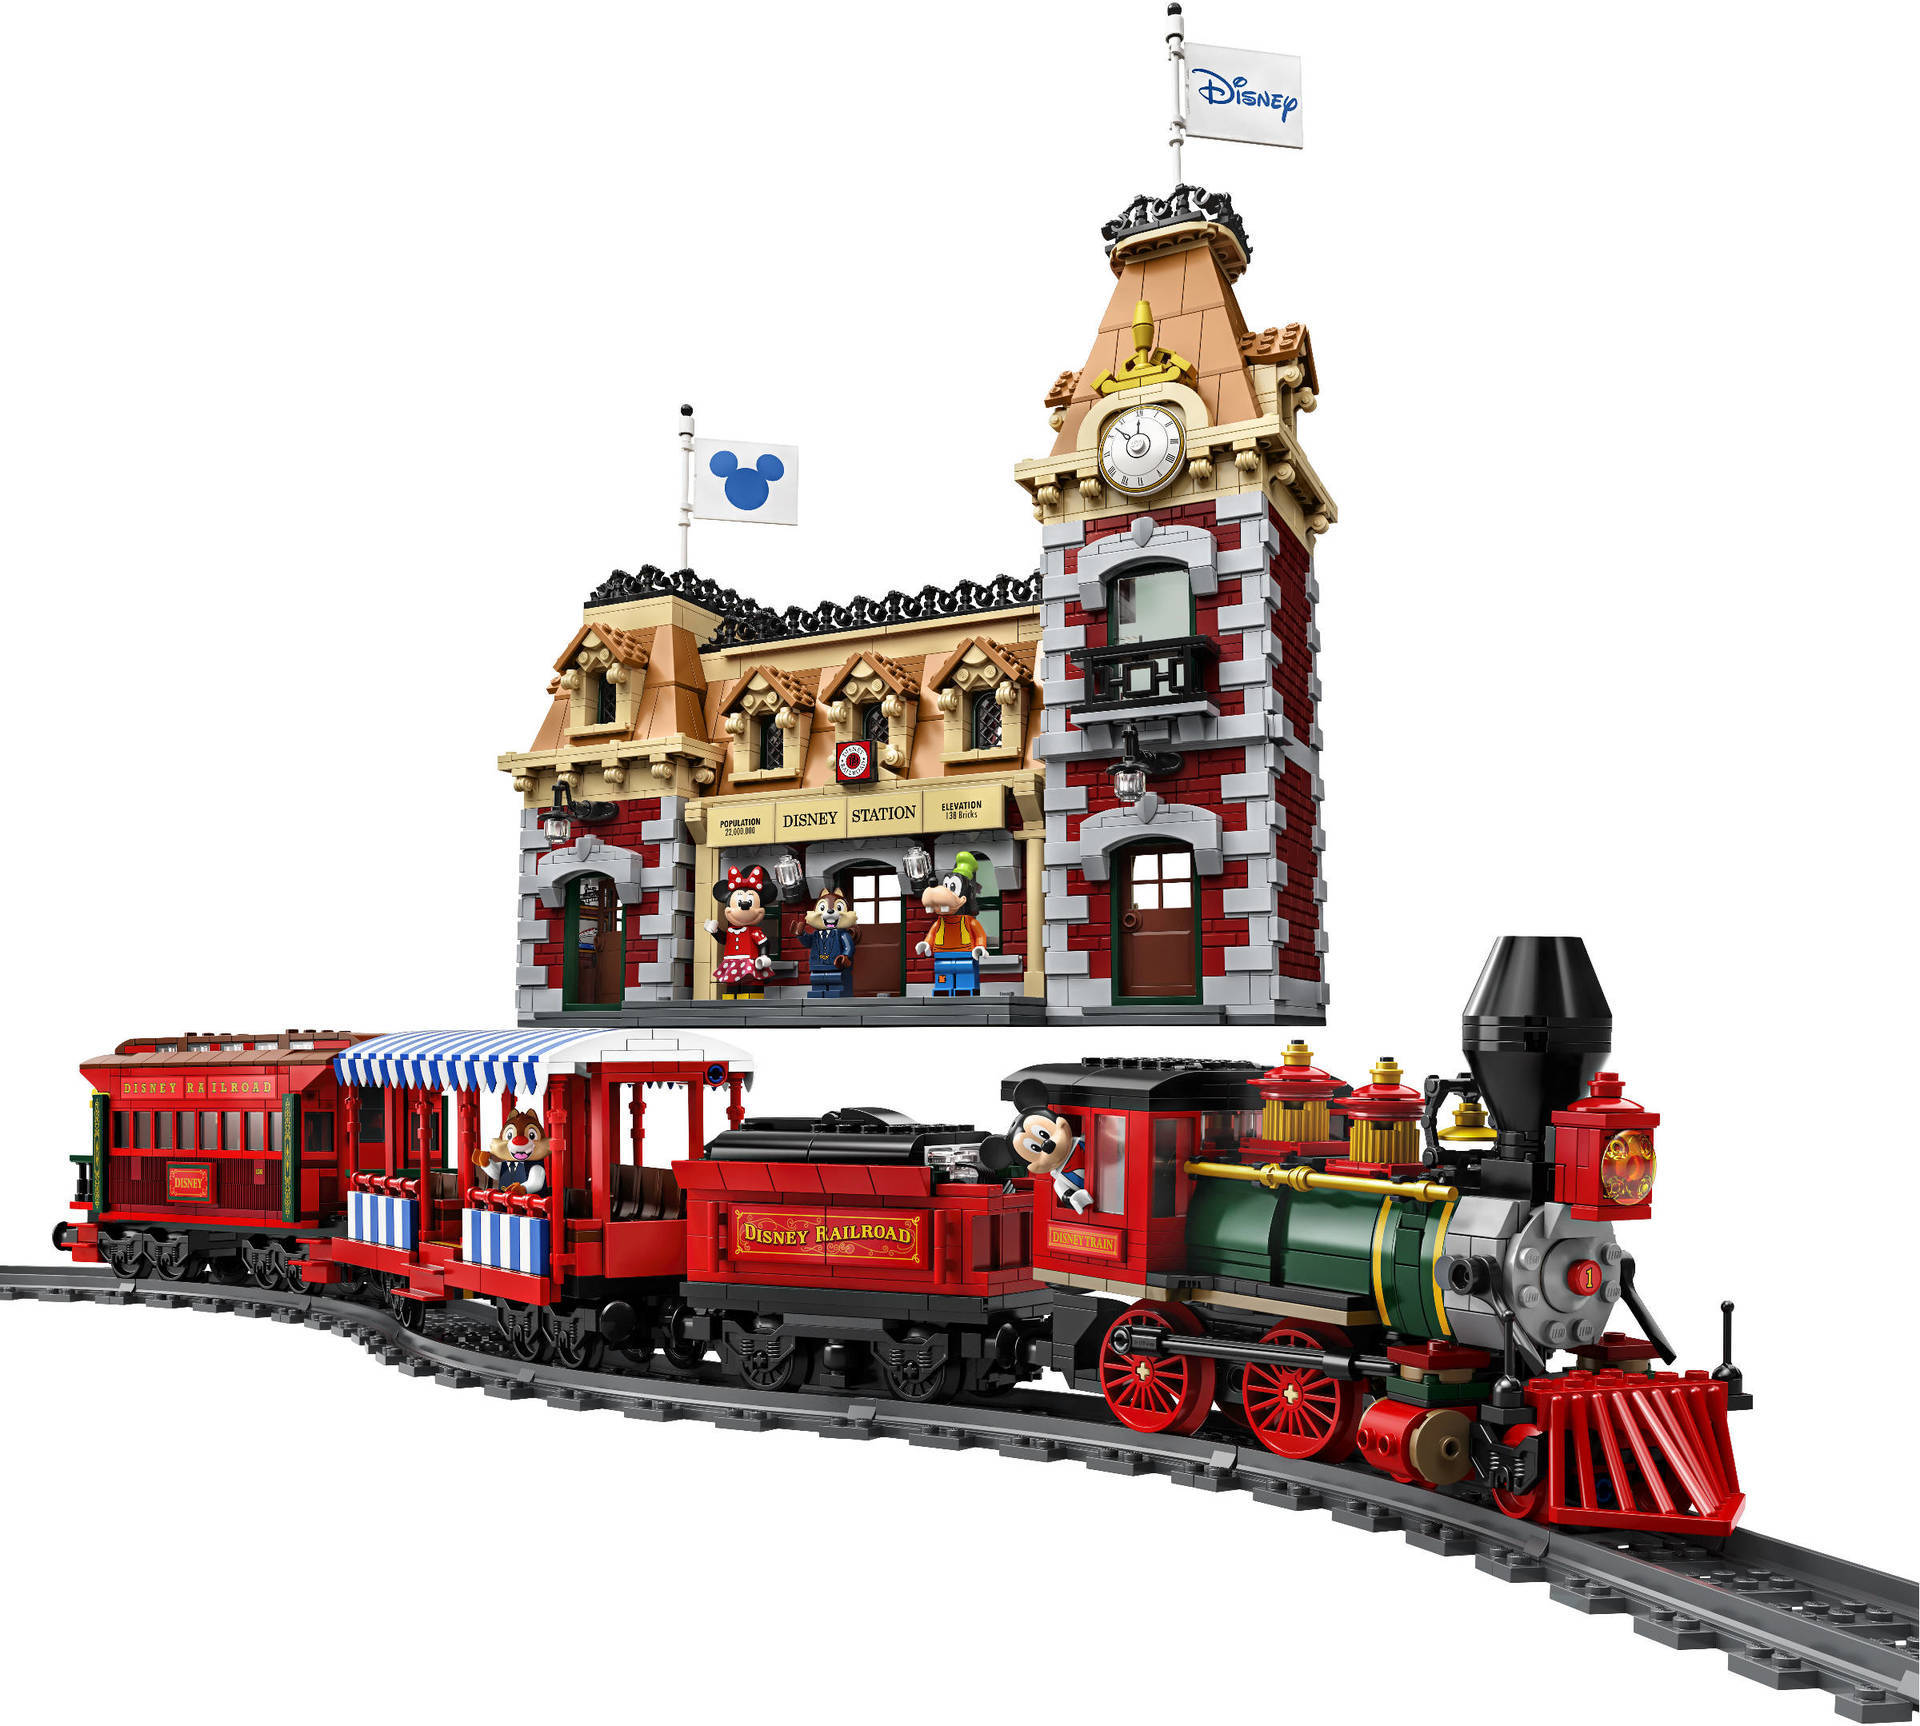 レゴ製品 トレイン Disney Train And Station に思う 欲しいのは猫屋線であってウエスタンリバー鉄道ぢゃないやい Legoゲージ推進機構日報 レゴトレイン ブログ